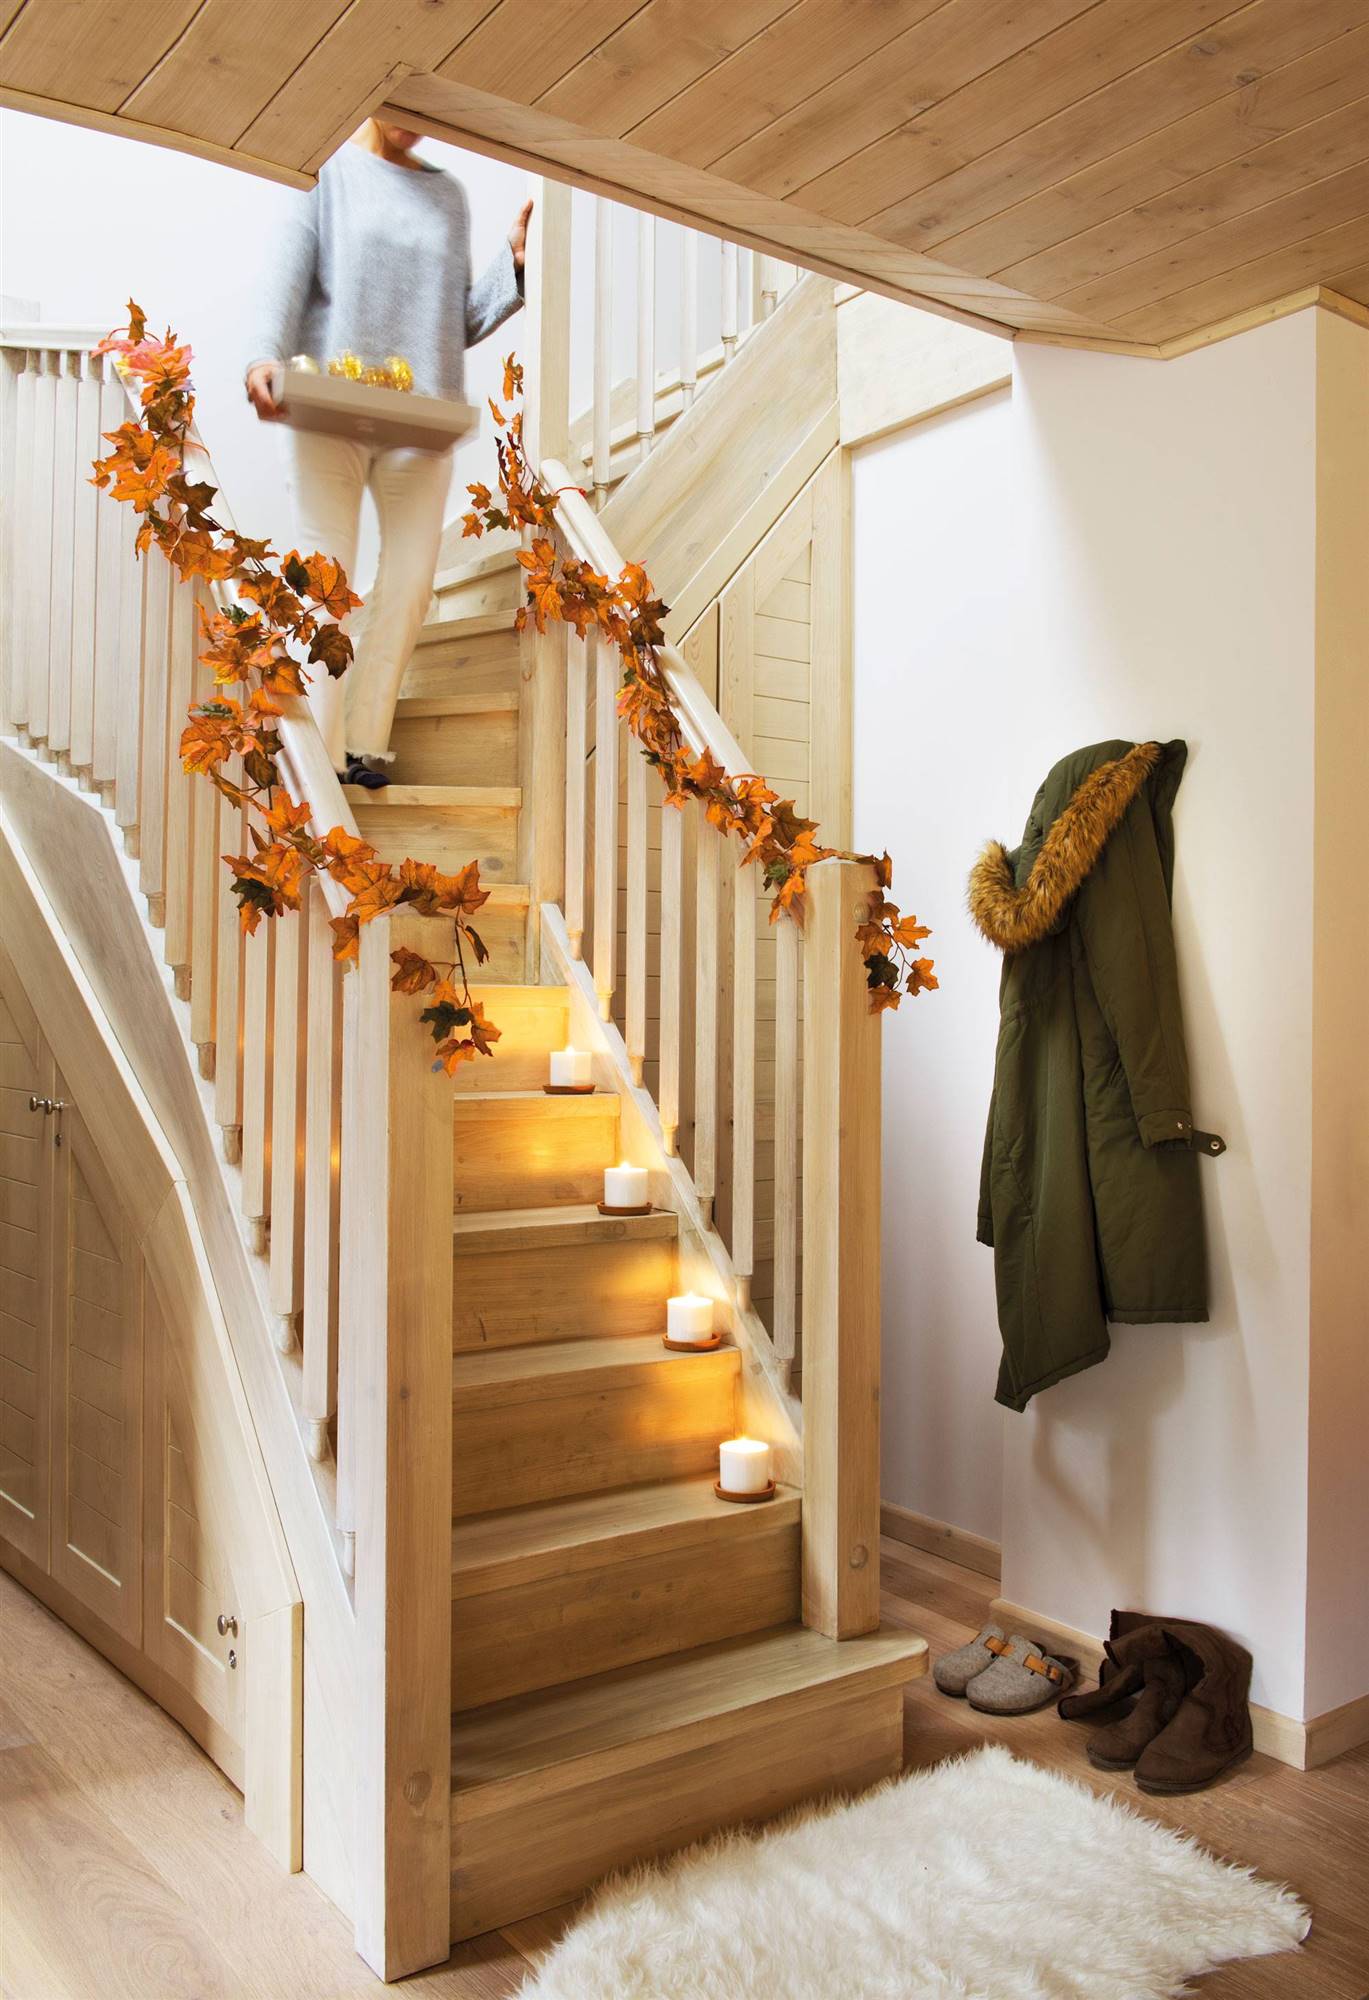 Escalera decorada con guirnalda navideña de hojas secas de otoño.